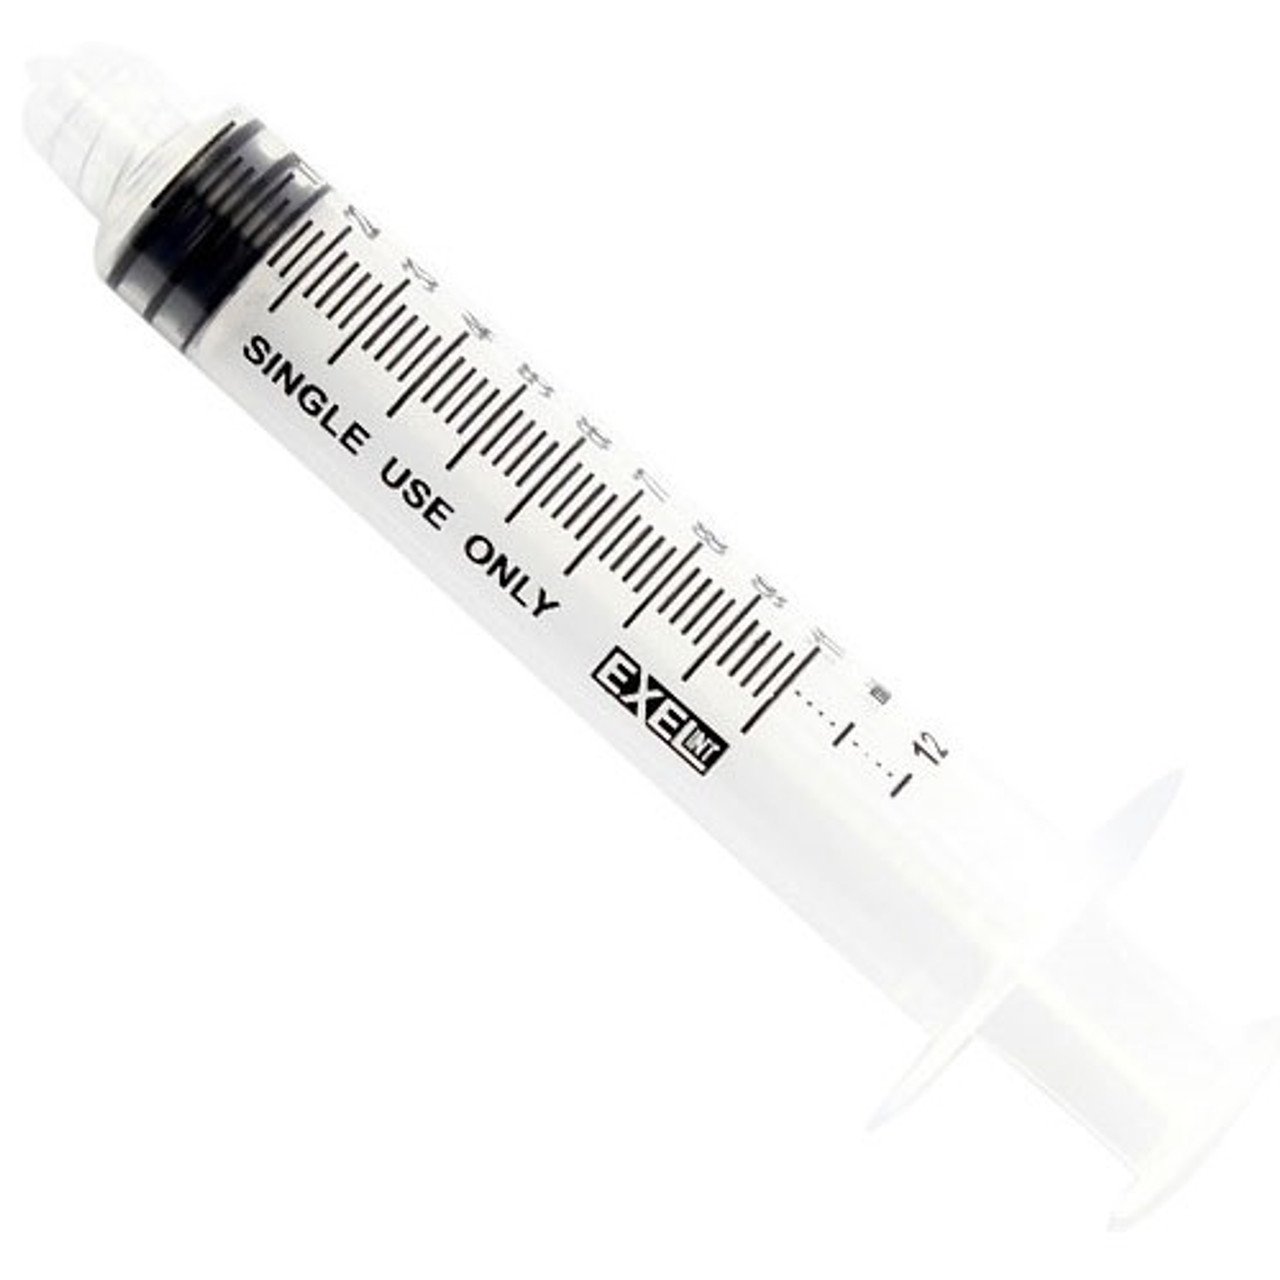 1mL Luer Lock Glass Syringe w/o Needle